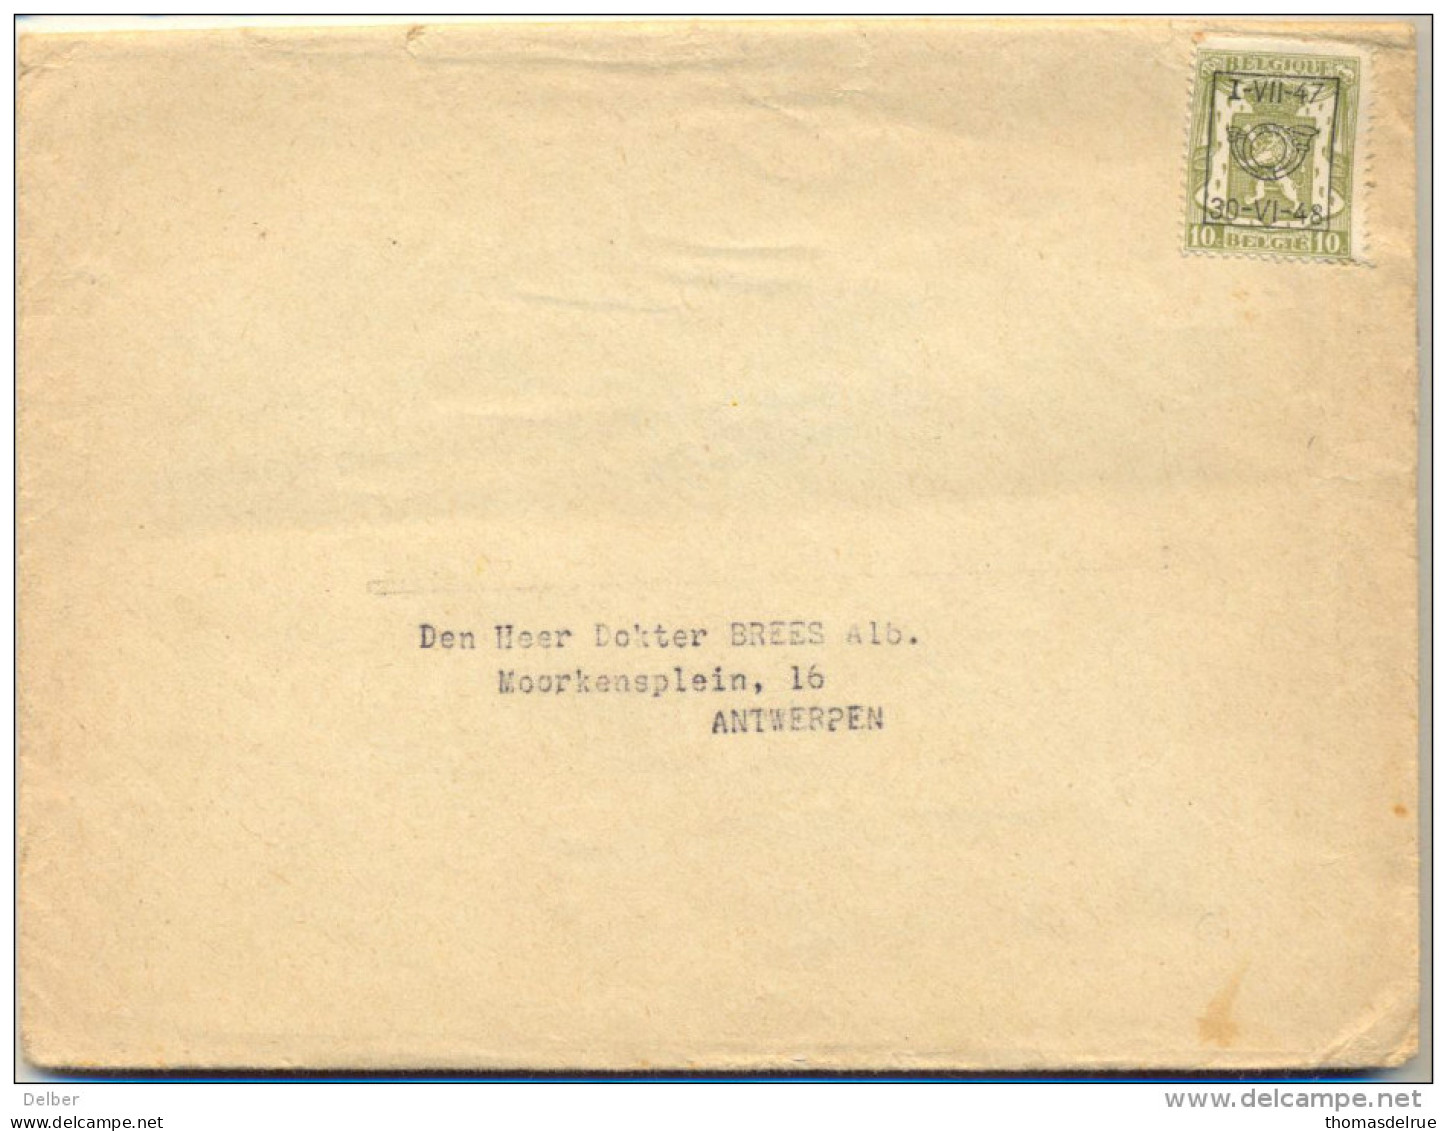 4cp-419: N° 568 : I -VII-47  30 - VI - 48 /  Omslag  75-77 Cdt Ponthie Brussl IV - Typografisch 1936-51 (Klein Staatswapen)